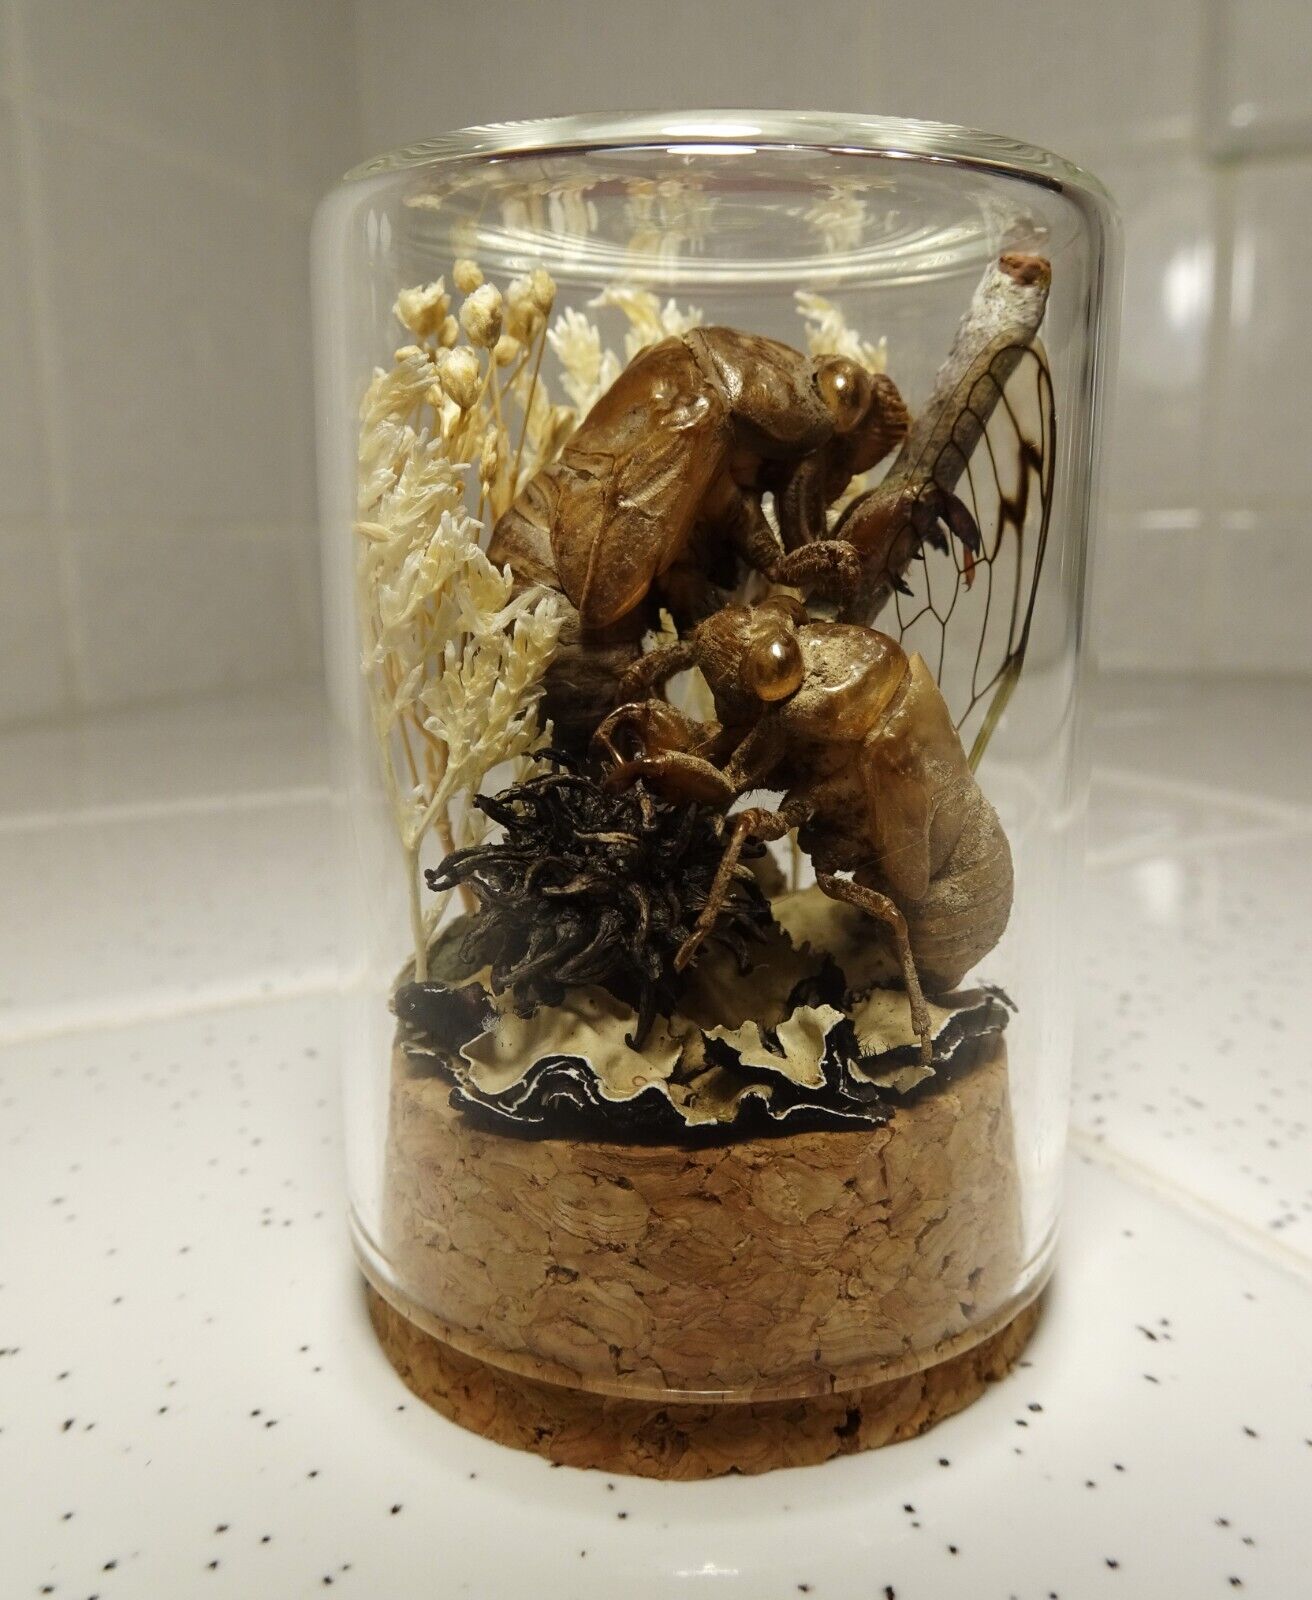 Two Cicada Skins Oddity Jar dried flowers moss cicada wing curiosity taxidermy